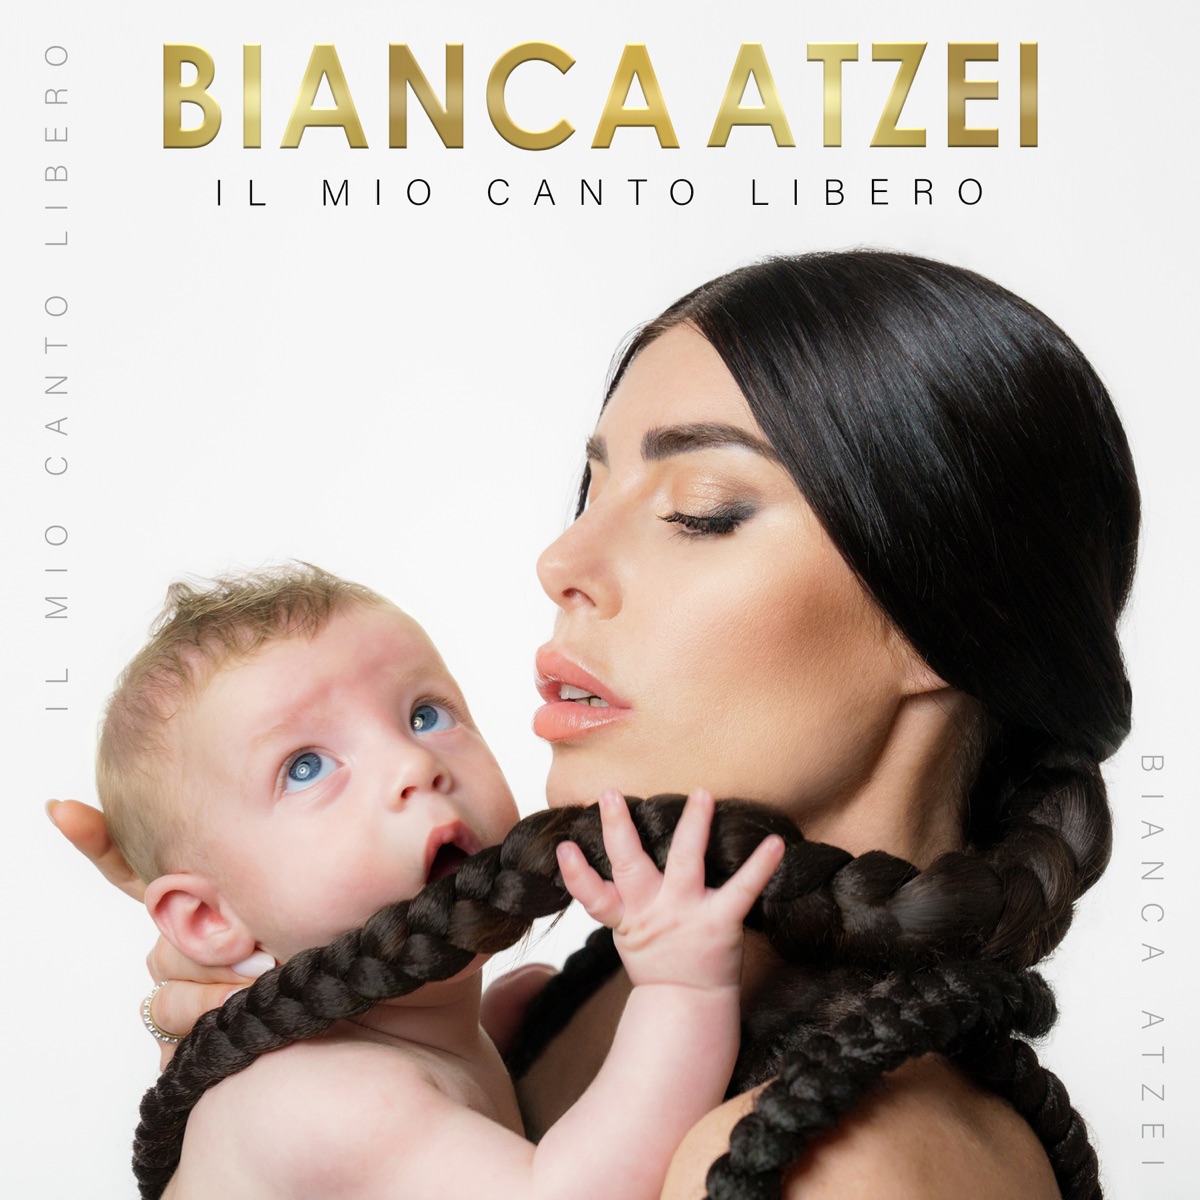 Il mio canto libero - Album by Bianca Atzei - Apple Music